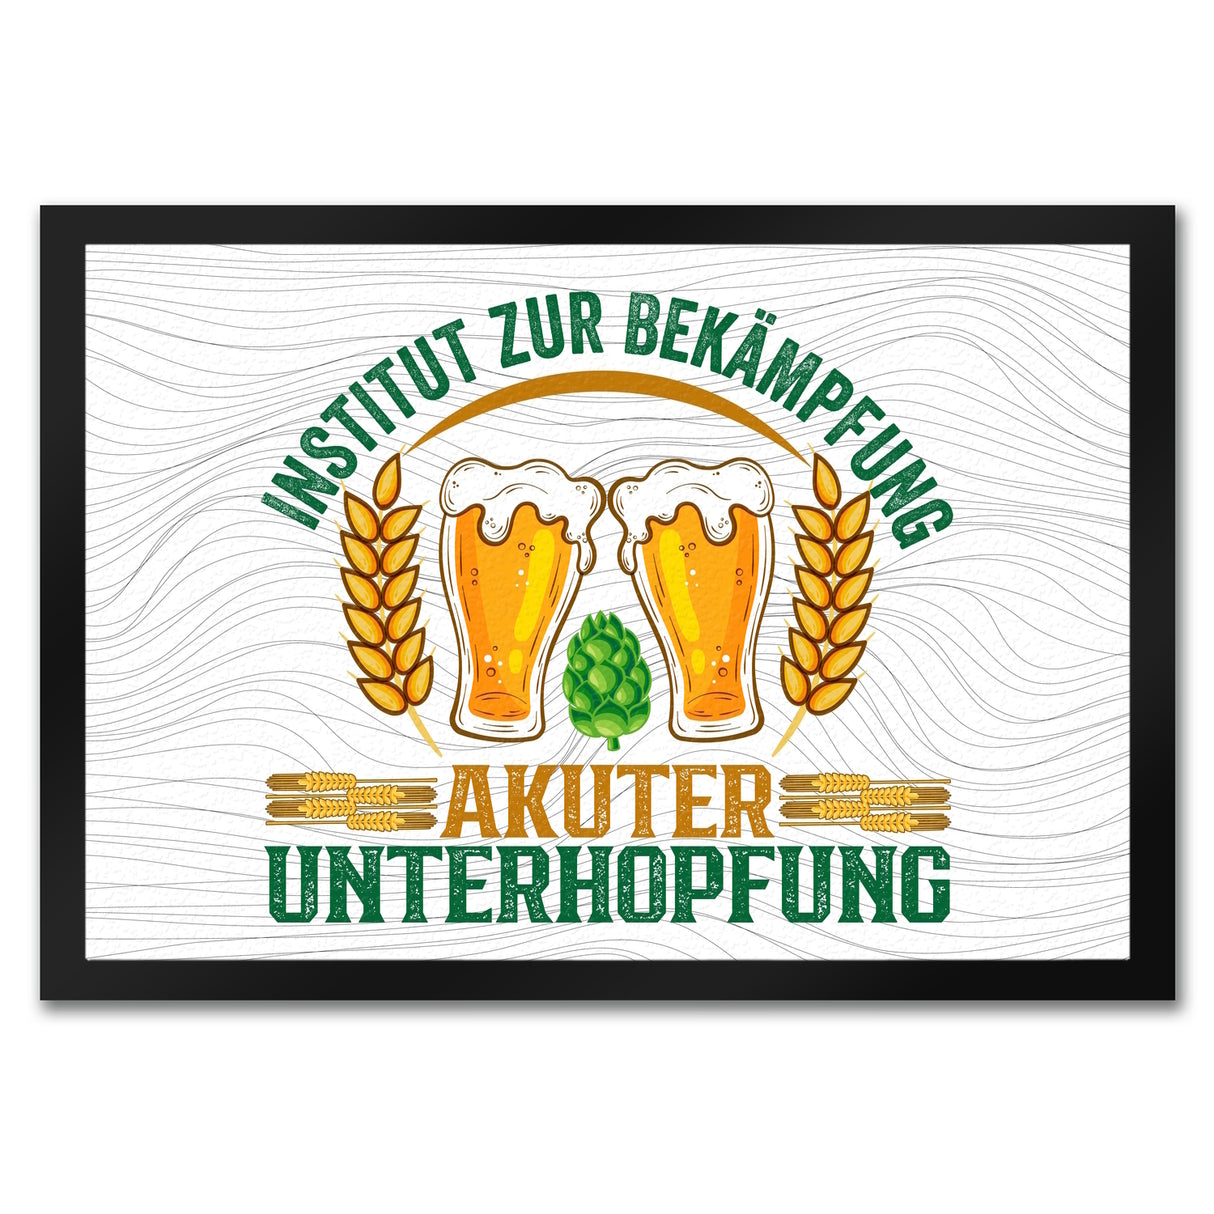 Bier Fußmatte in 35x50 cm mit Spruch Institut zur Bekämpfung akuter Unterhopfung